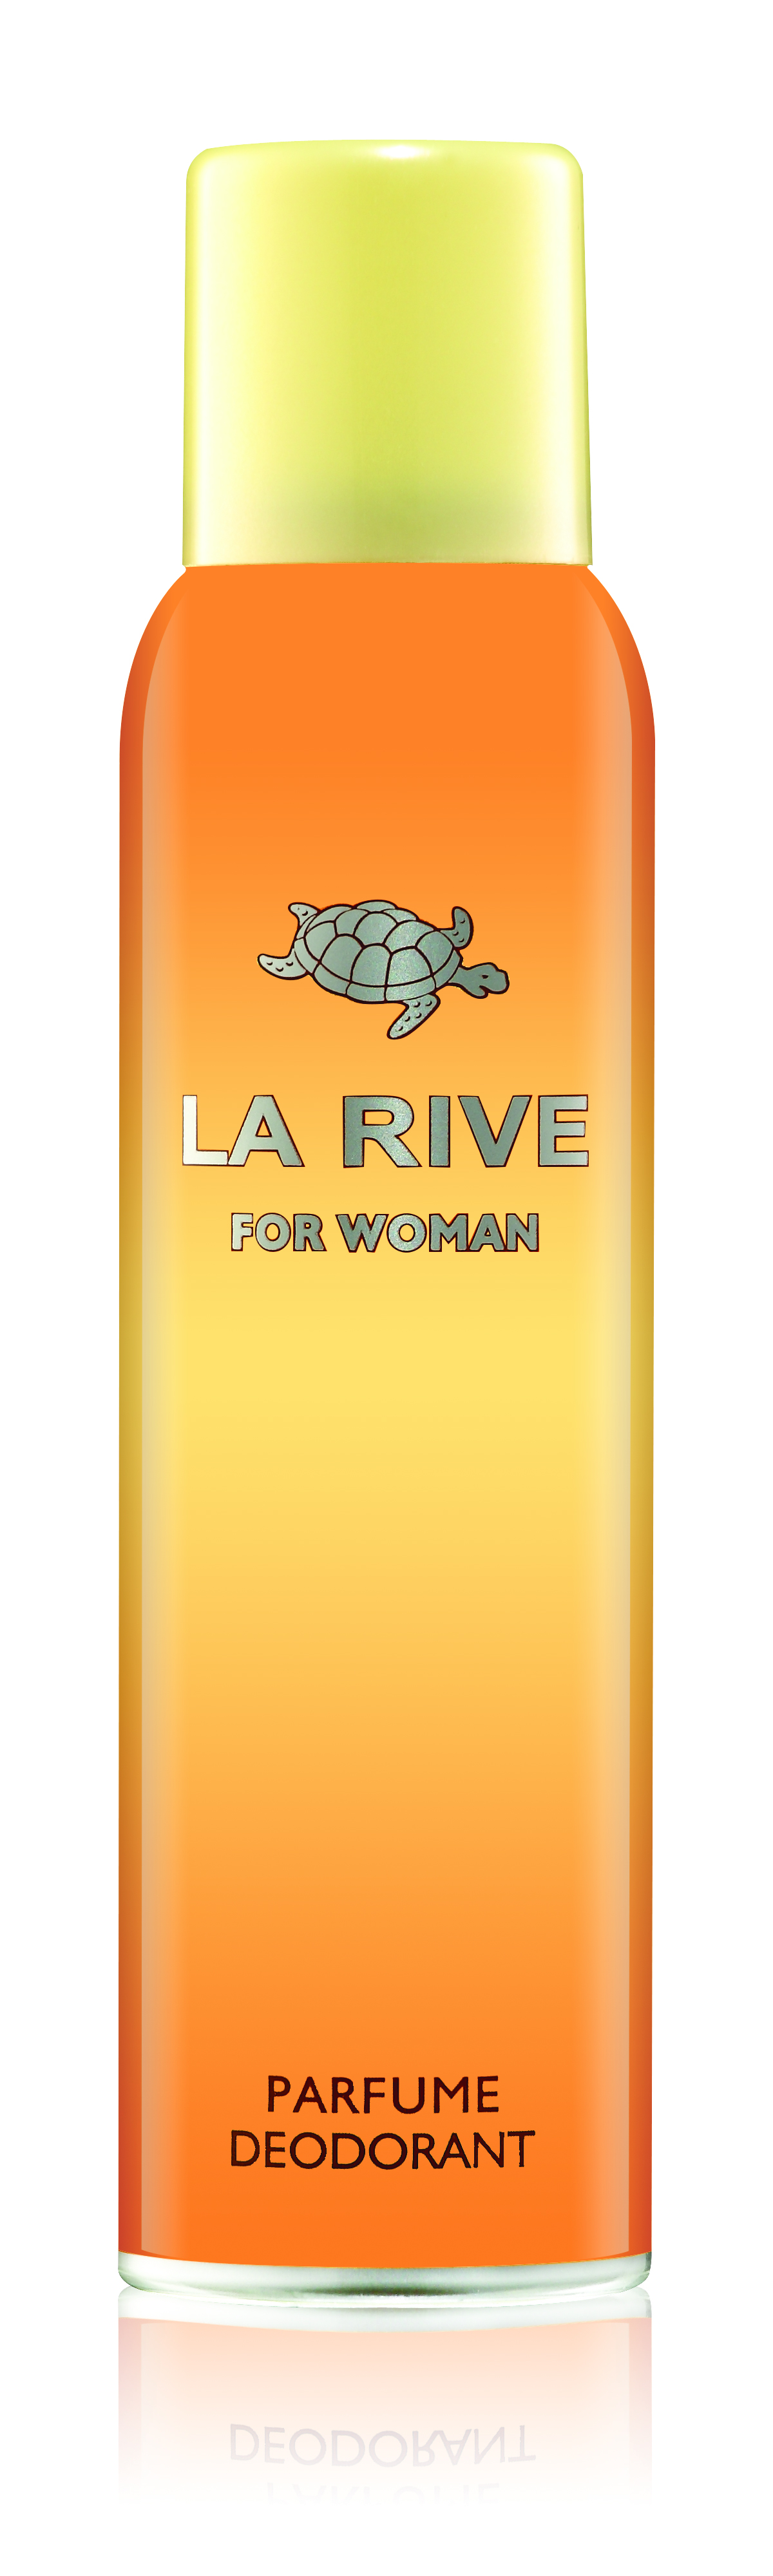 LA RIVE for woman, 150ml